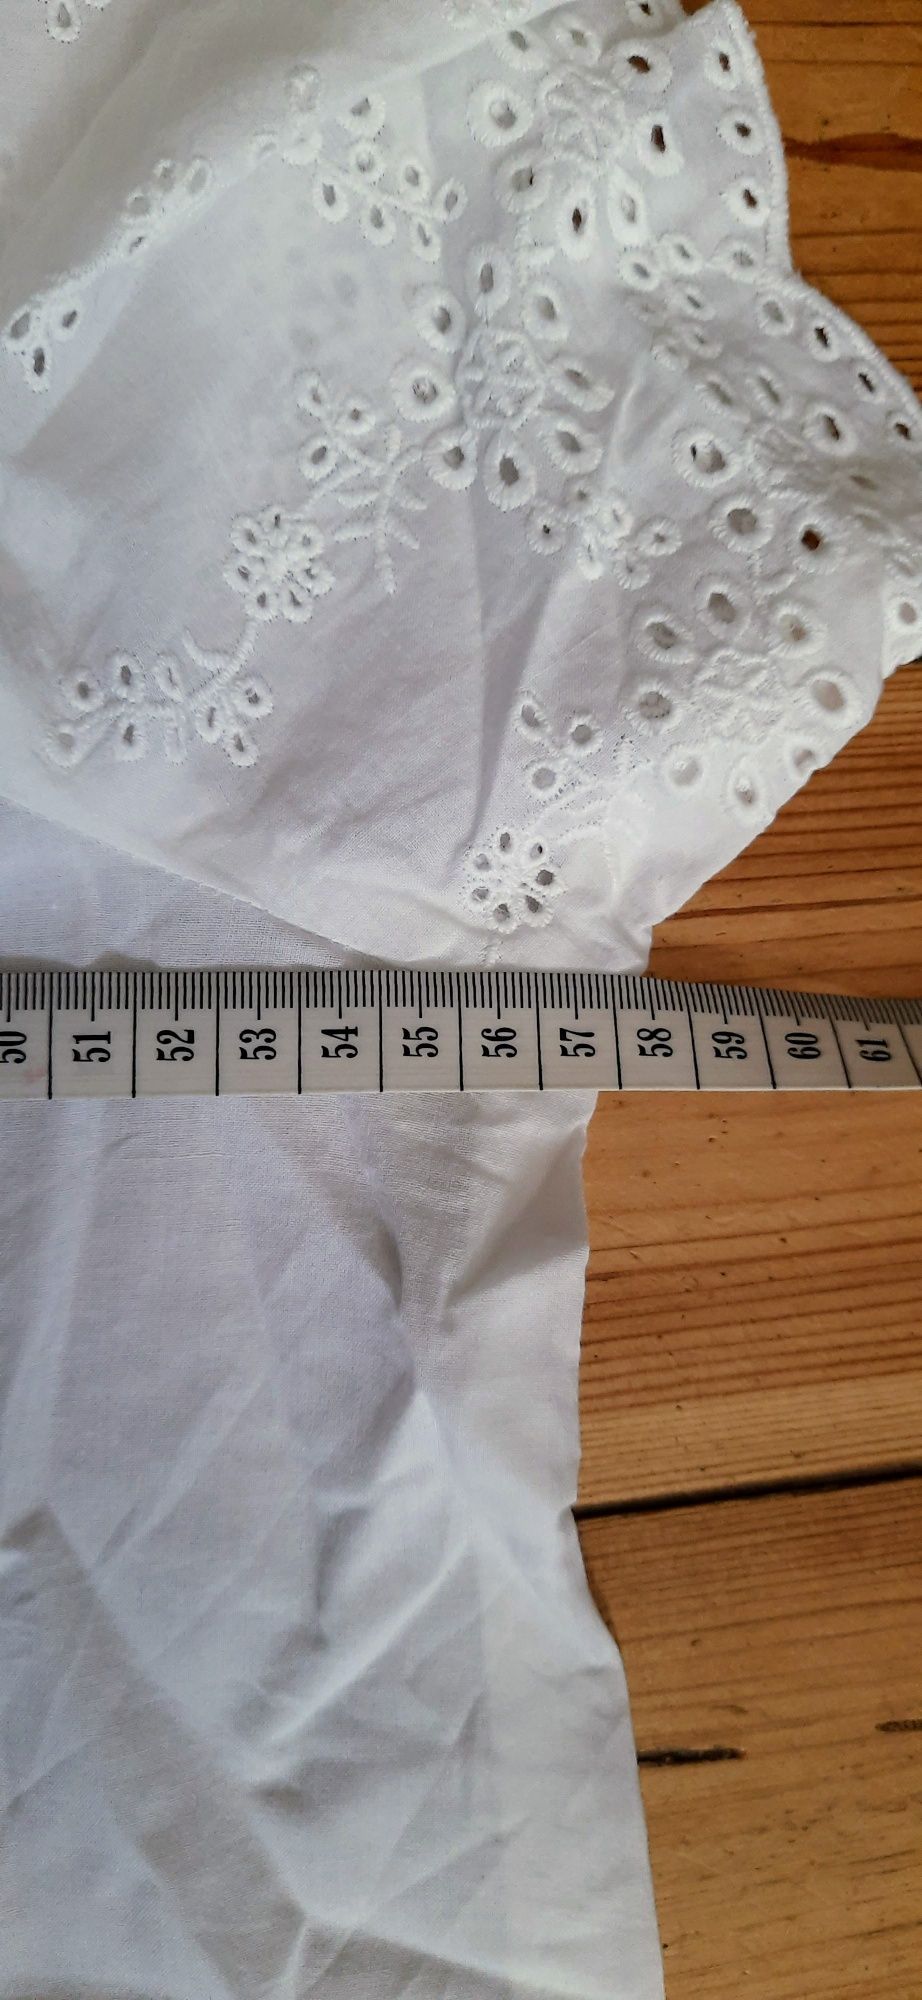 Bawełniana bluzka ciążowa góra od piżamy do spania Asos rozmiar xl 42